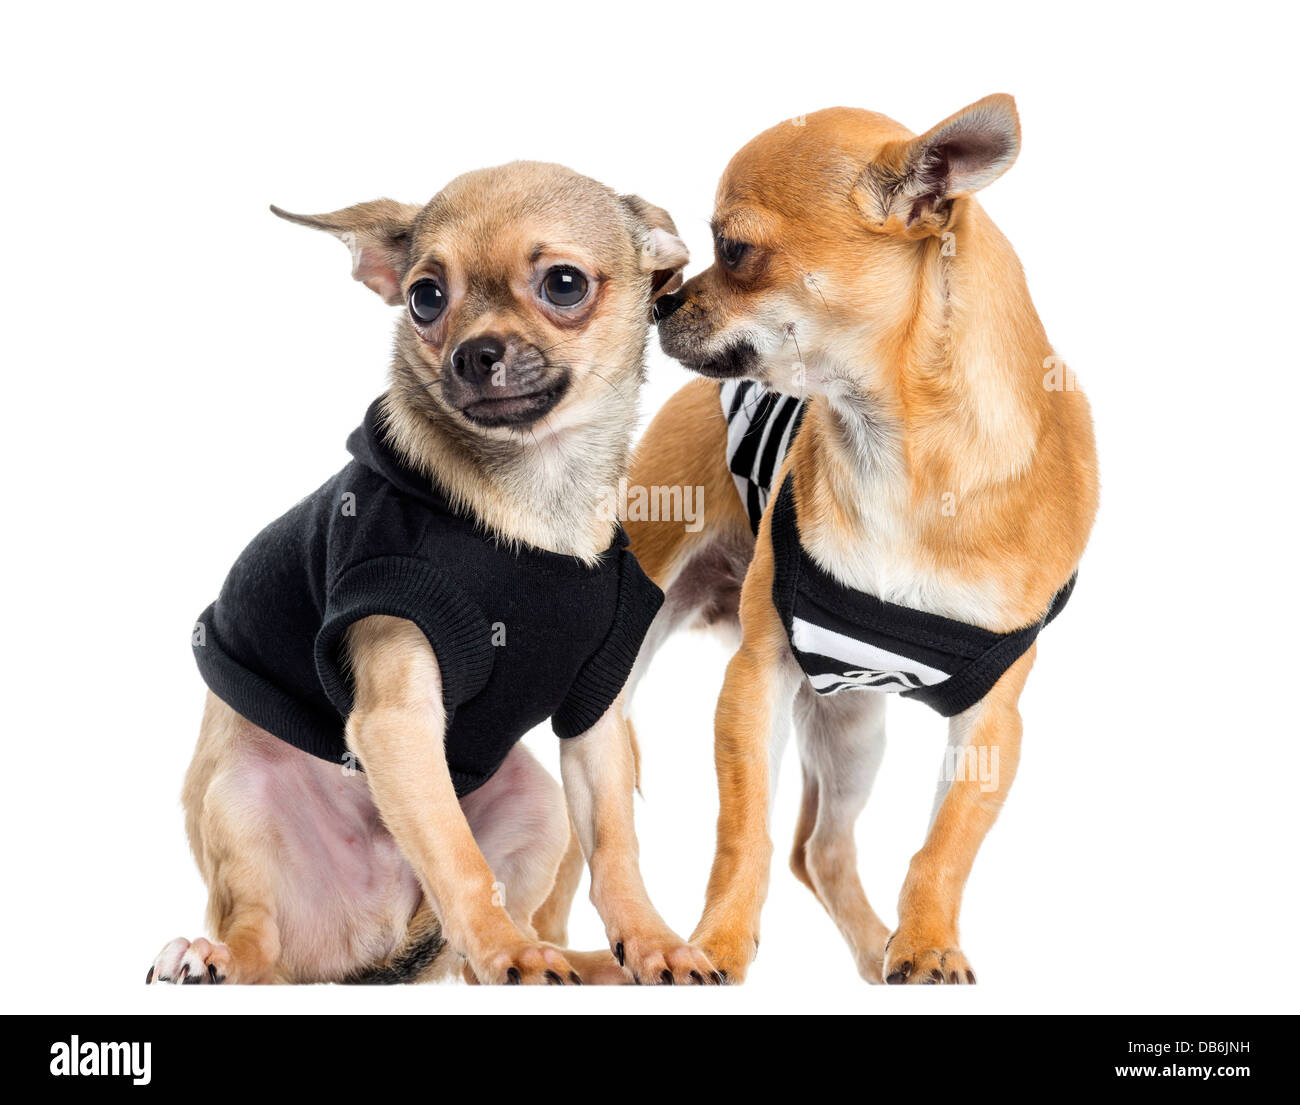 Zwei verkleidete Chihuahuas vor weißem Hintergrund Stockfoto